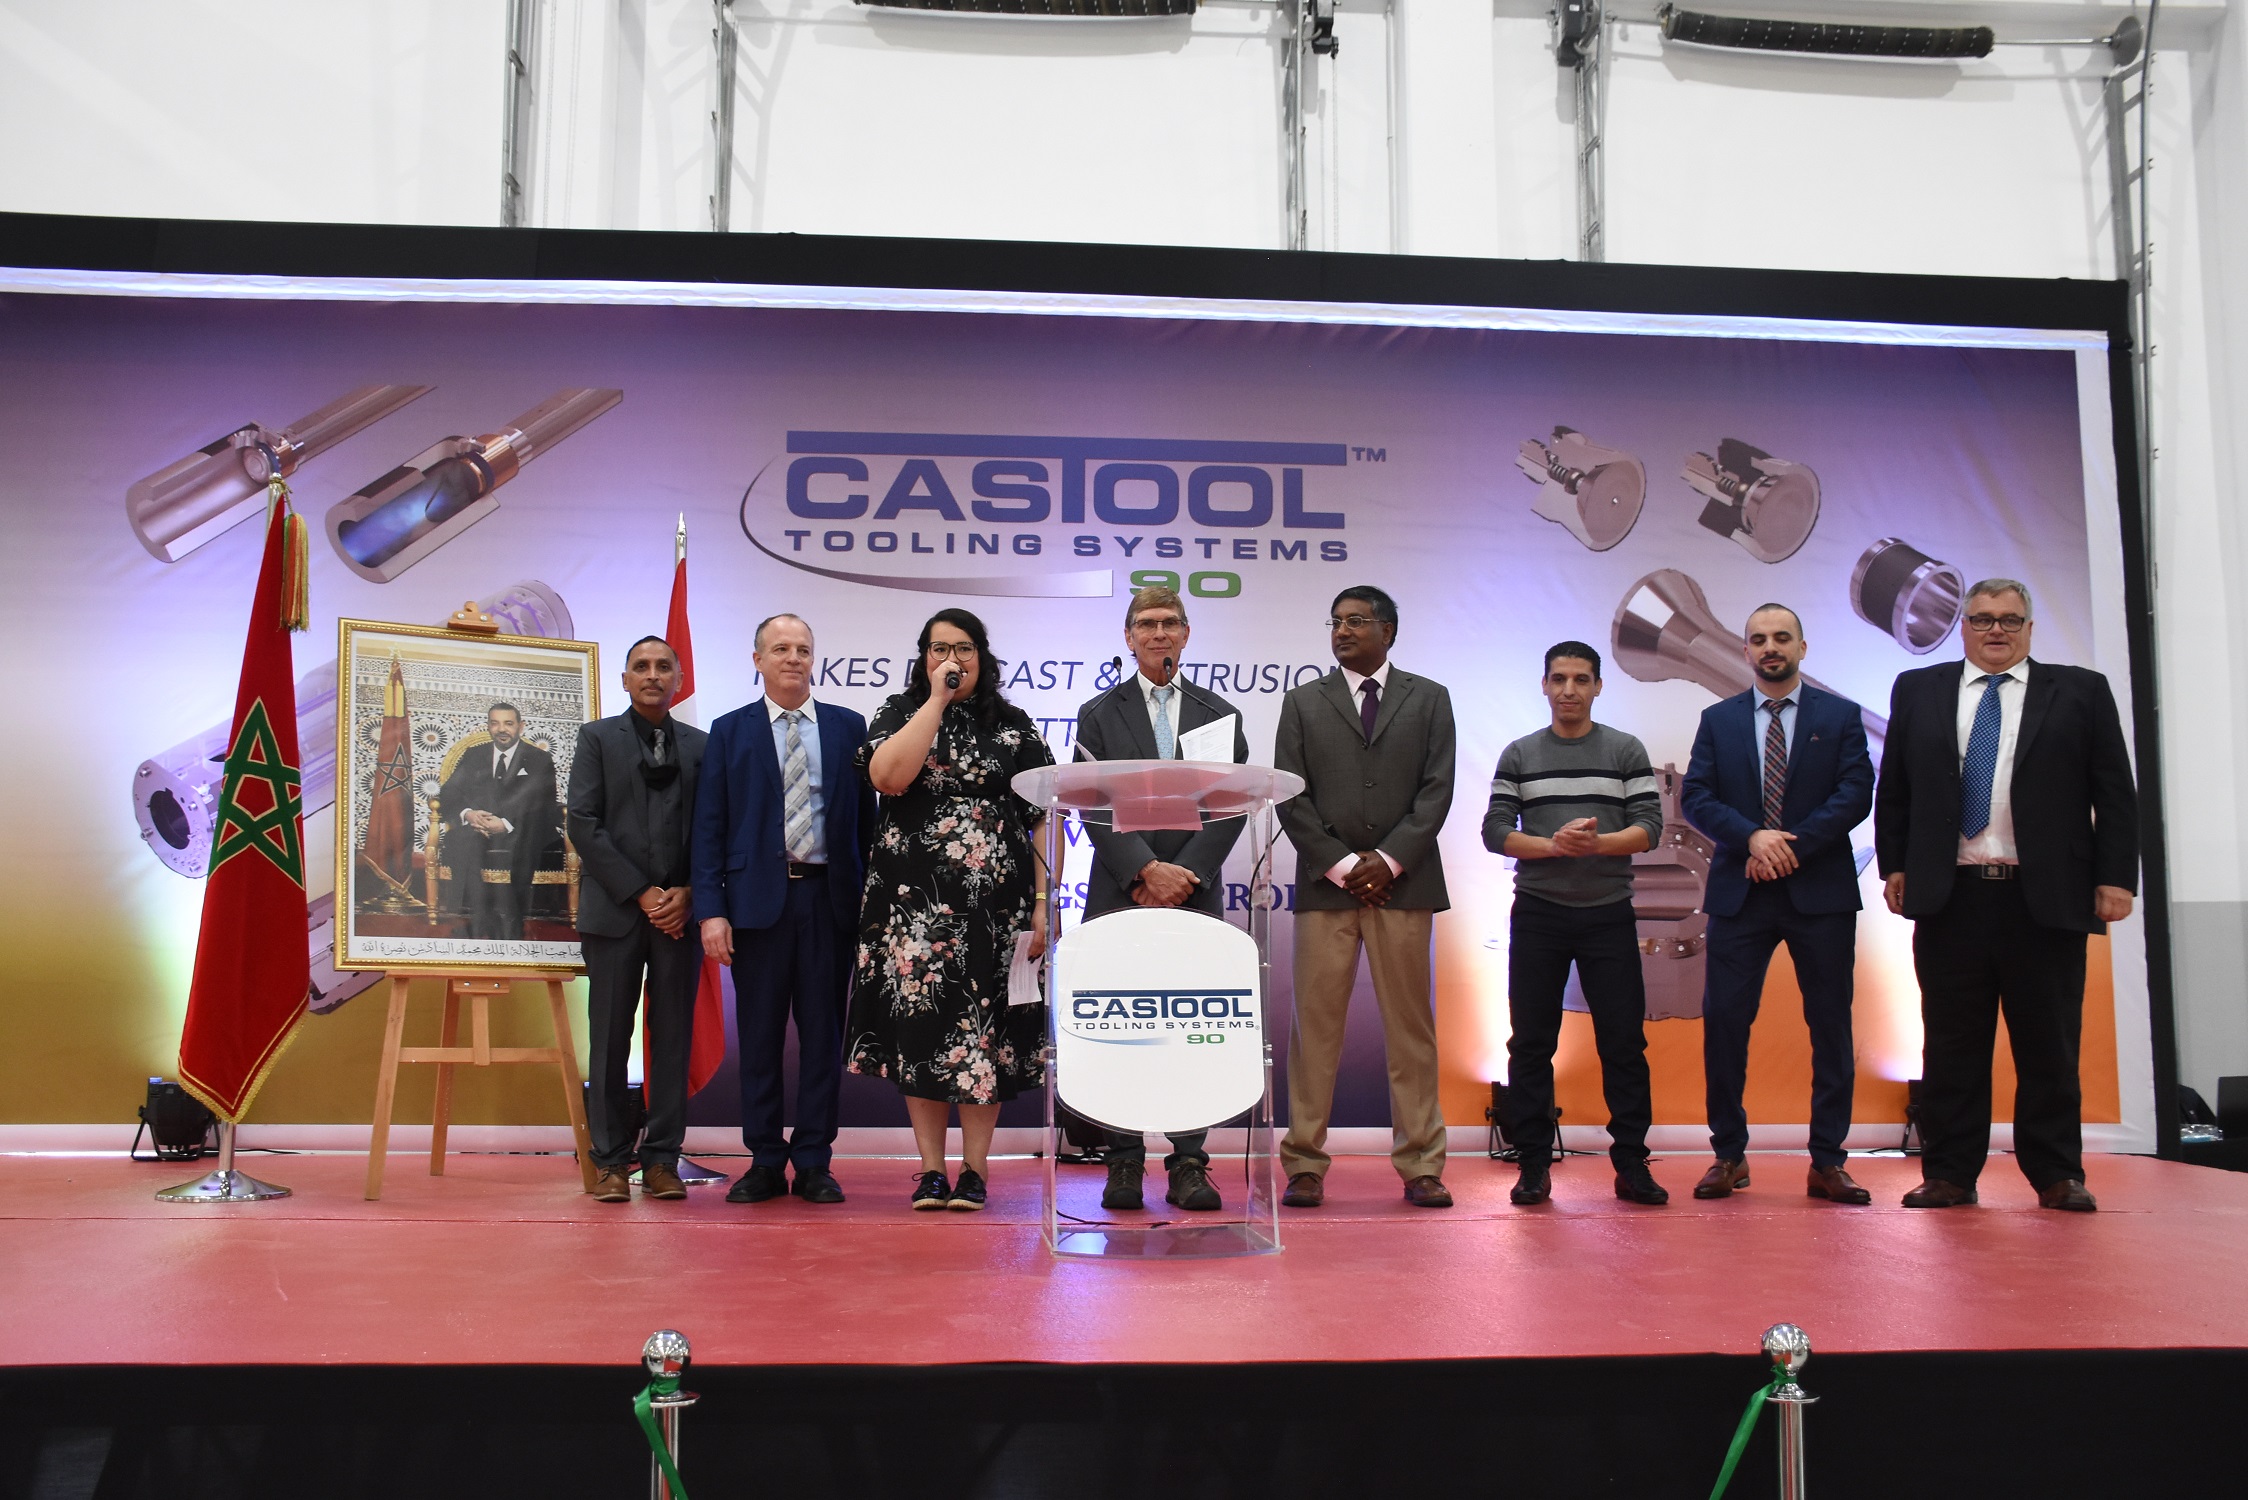 Industrie automobile : Le canadien Exco Technologies inaugure son usine Castool 90 à Kénitra